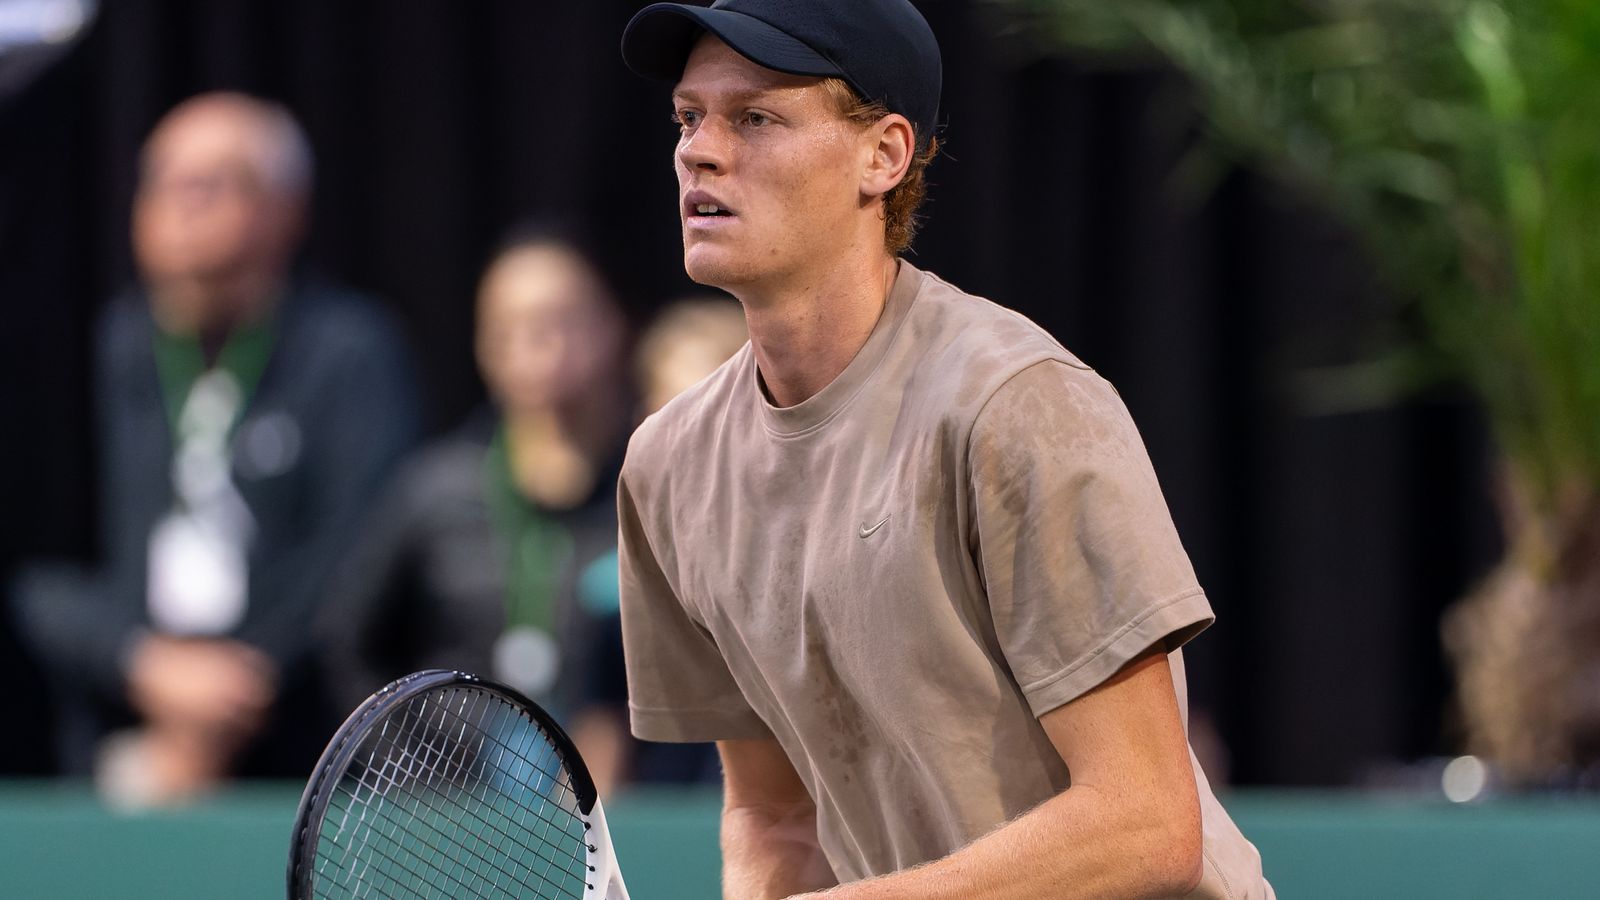 ABN AMRO Open, Rotterdam: Jannik Sinner comienza ganando en Rotterdam después de la victoria en el Abierto de Australia |  Noticias de tenis